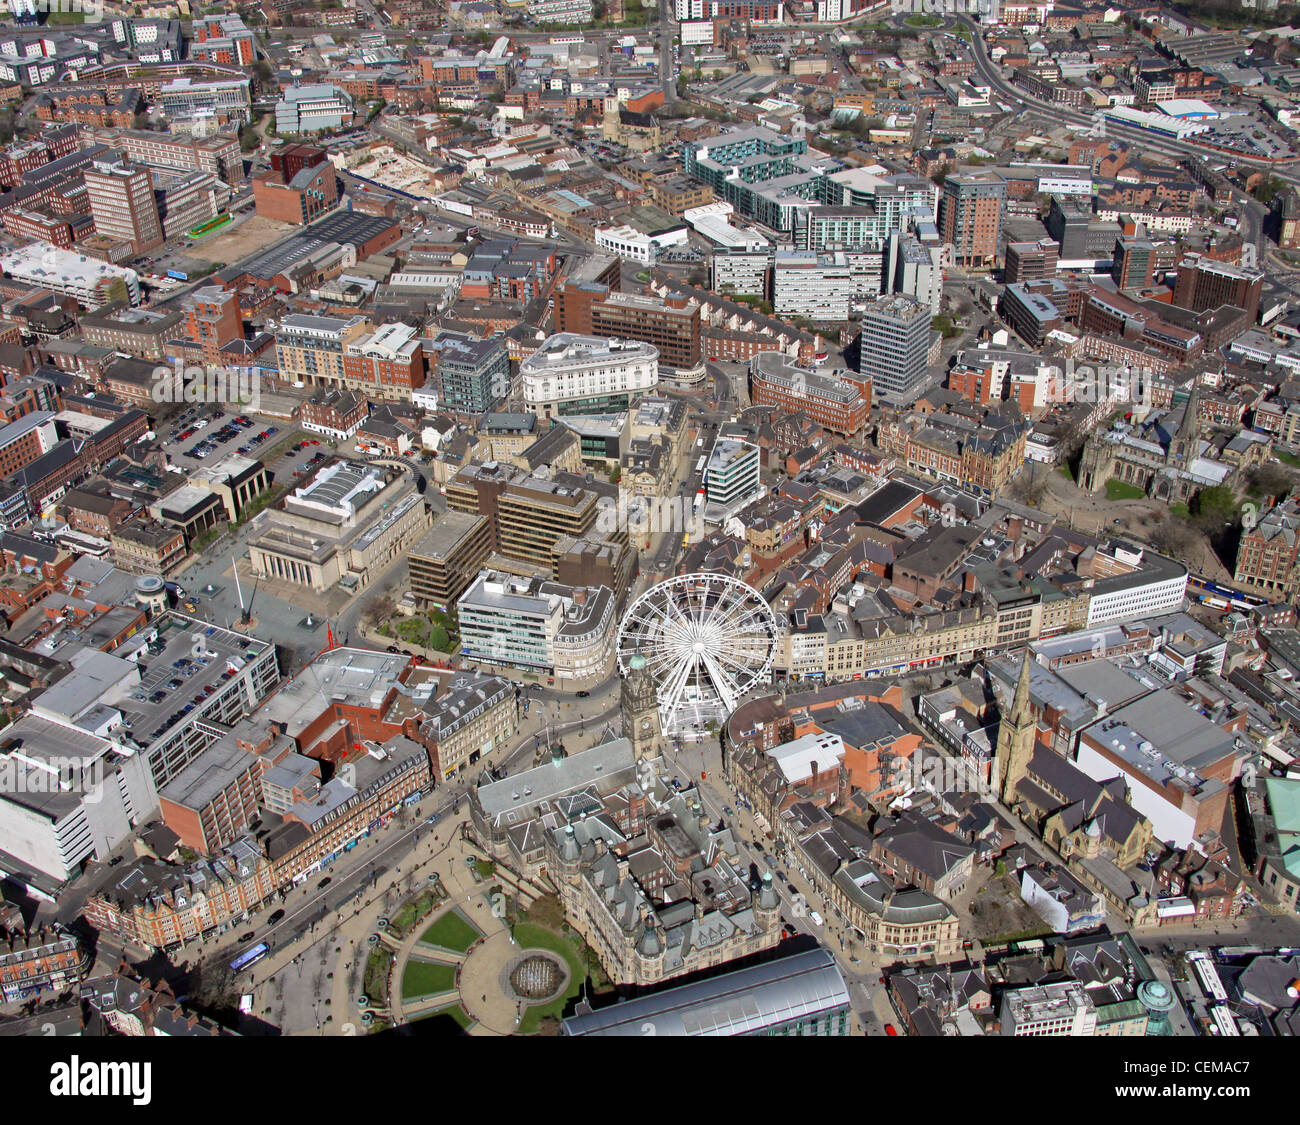 Luftaufnahme des Stadtzentrums von Sheffield, aufgenommen 2010 mit einem weißen Riesenrad in der Surrey Street/Fargate nahe dem Rathaus Stockfoto